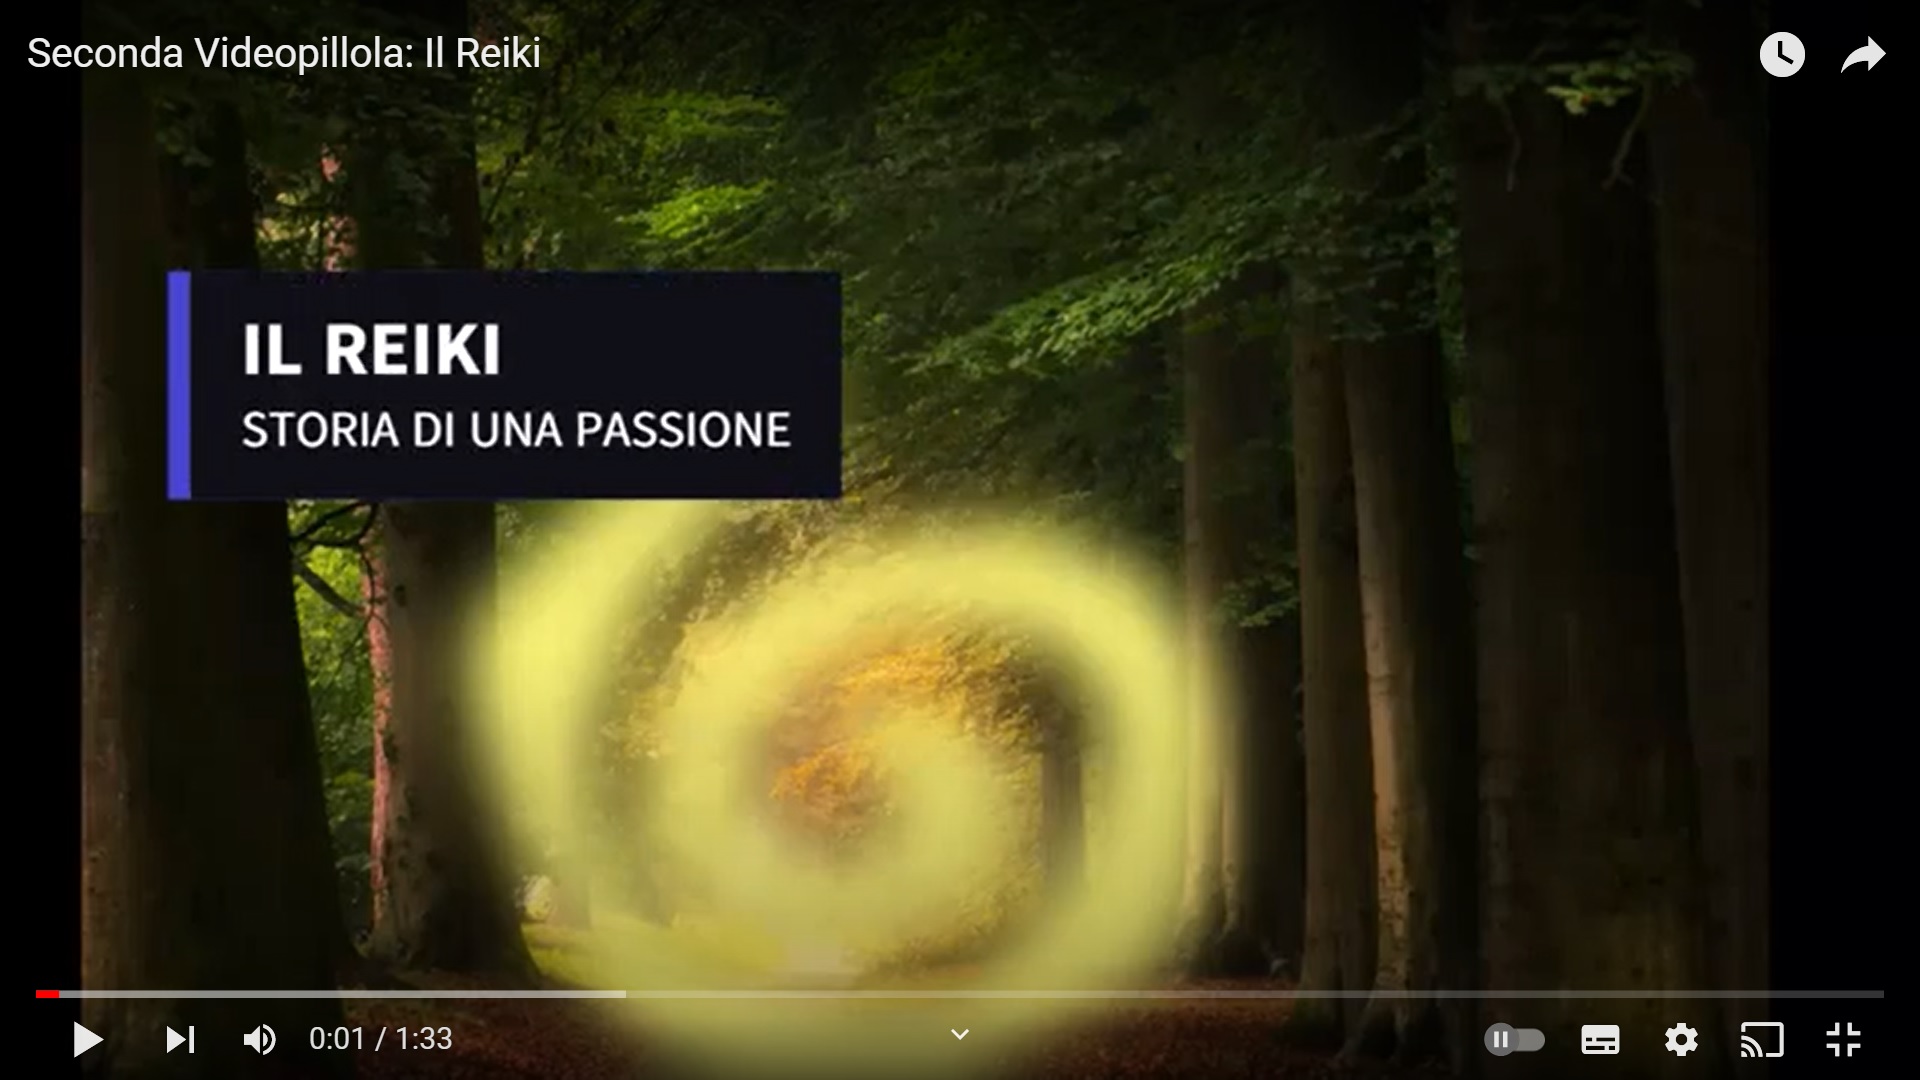 Seconda Videopillola: il Reiki, storia di una passione